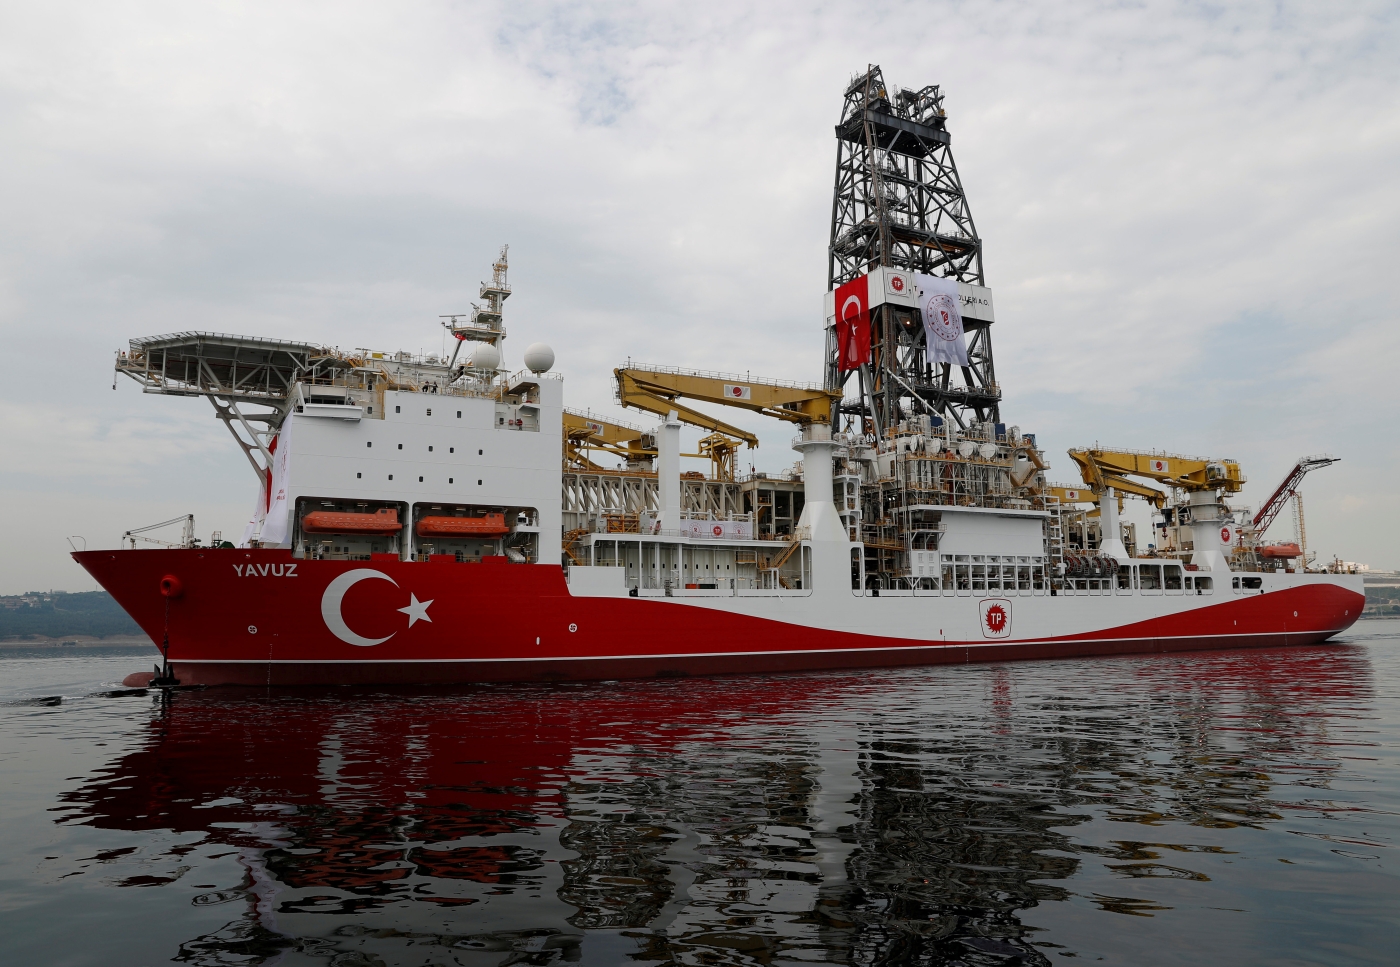 Turkish exploration ship Yavuz